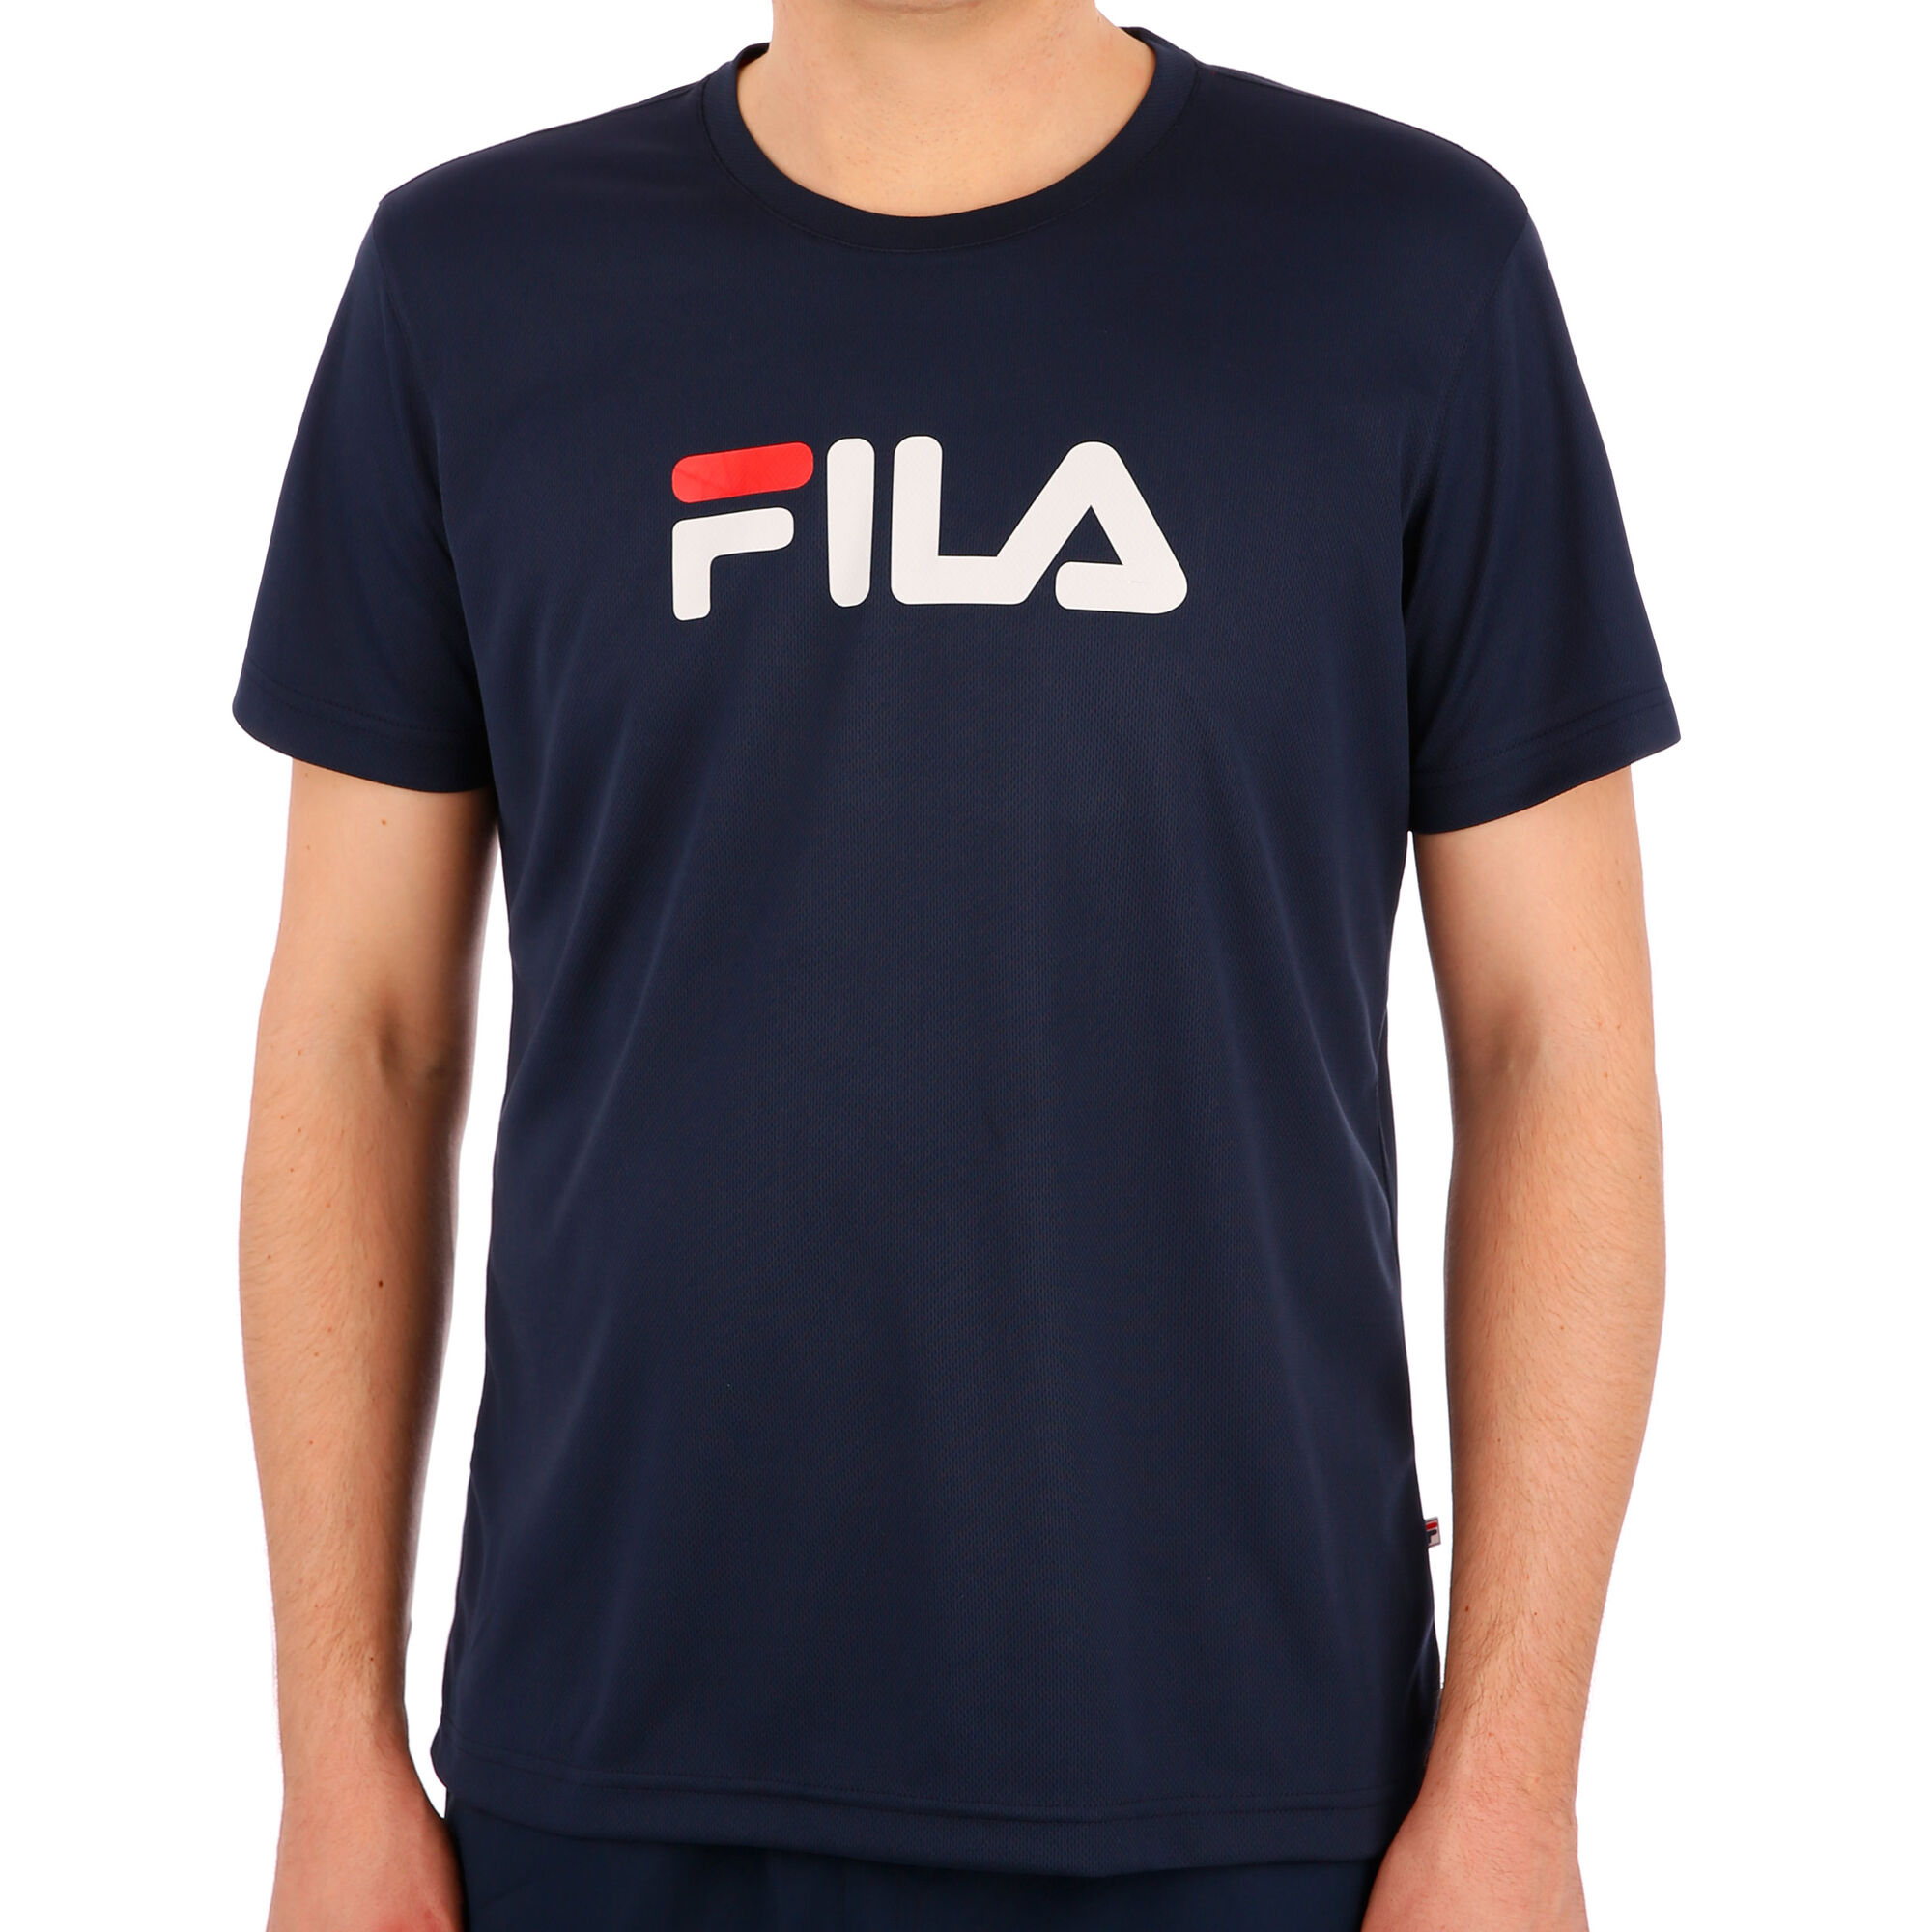 Fila T-shirt Herrer - Mørkeblå, Hvid køb online | Tennis-Point